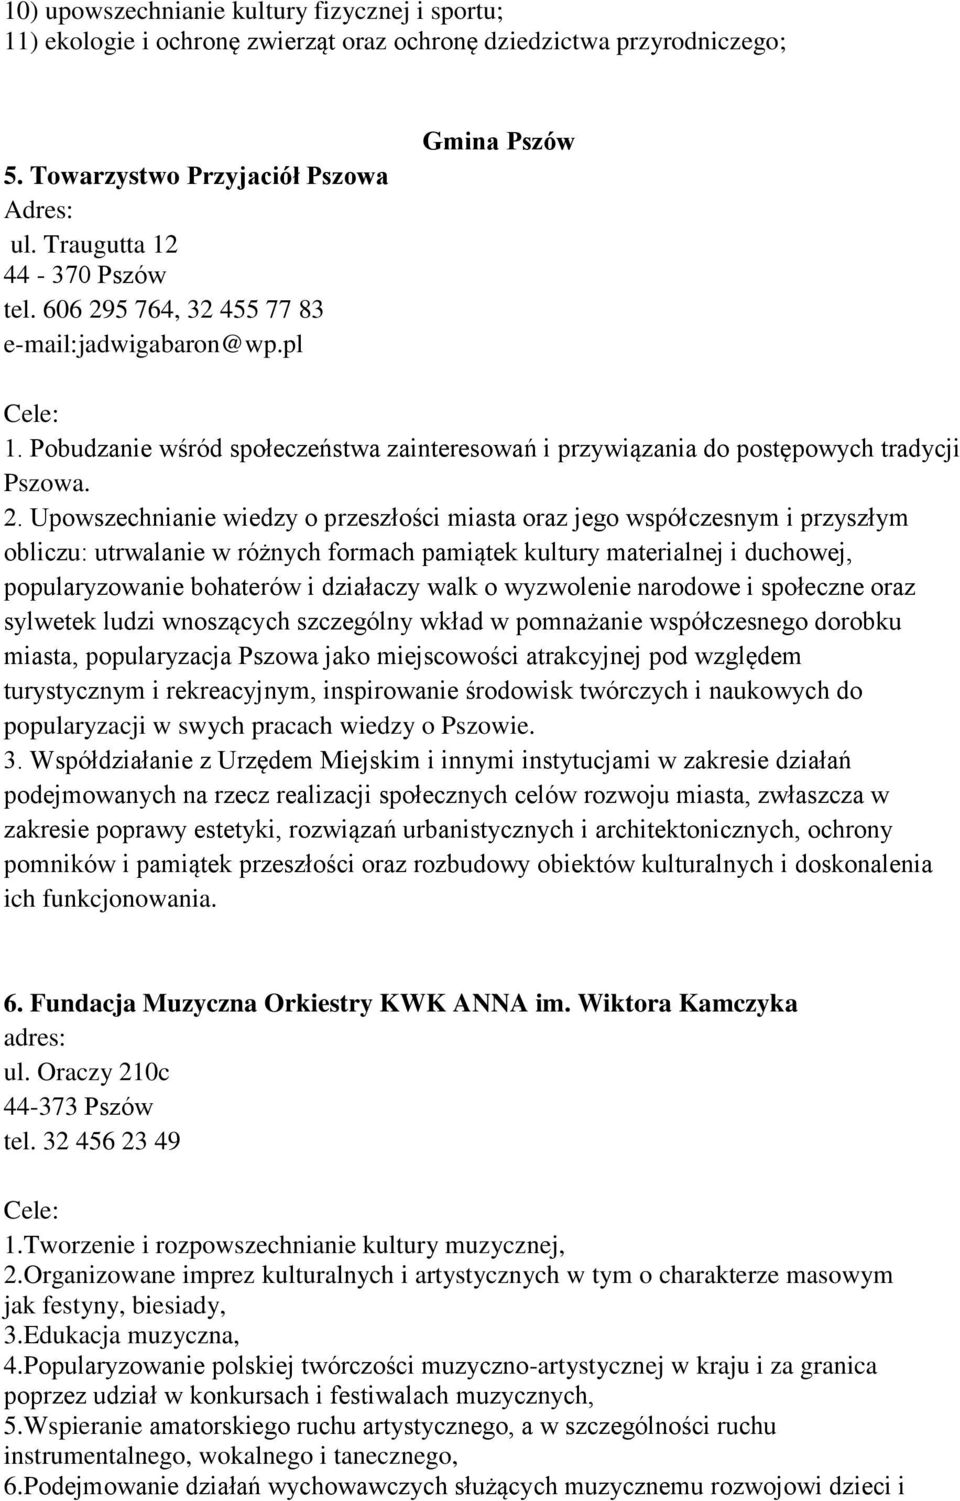 5 764, 32 455 77 83 e-mail:jadwigabaron@wp.pl Gmina Pszów 1. Pobudzanie wśród społeczeństwa zainteresowań i przywiązania do postępowych tradycji Pszowa. 2.